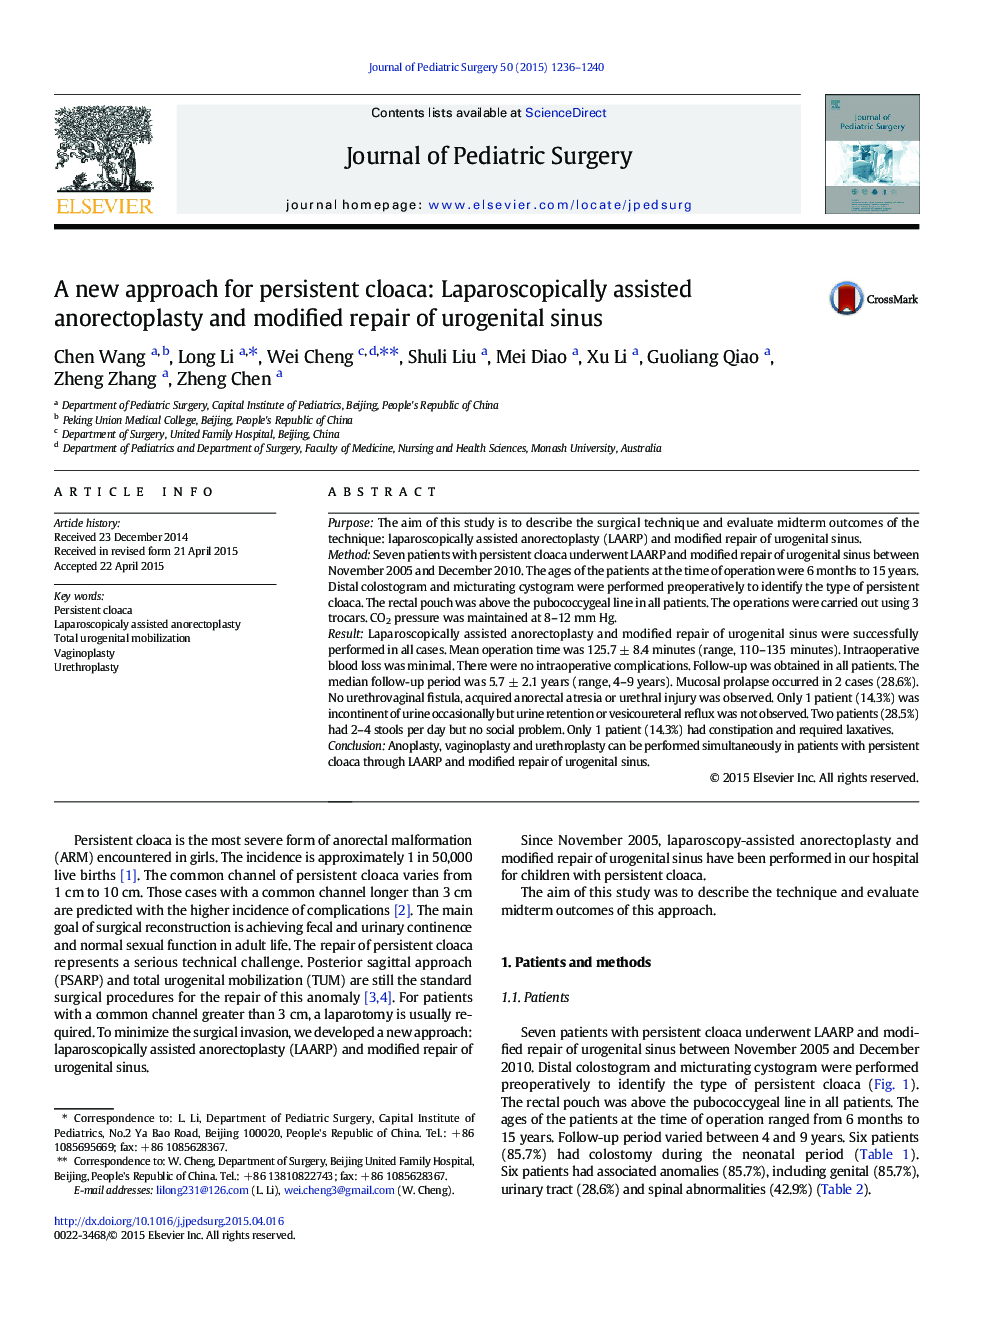 یک رویکرد جدید برای کولاک دائمی: آندورکتوپلاستی با کمک لاپاروسکوپی و اصلاح سینوس ادراری 